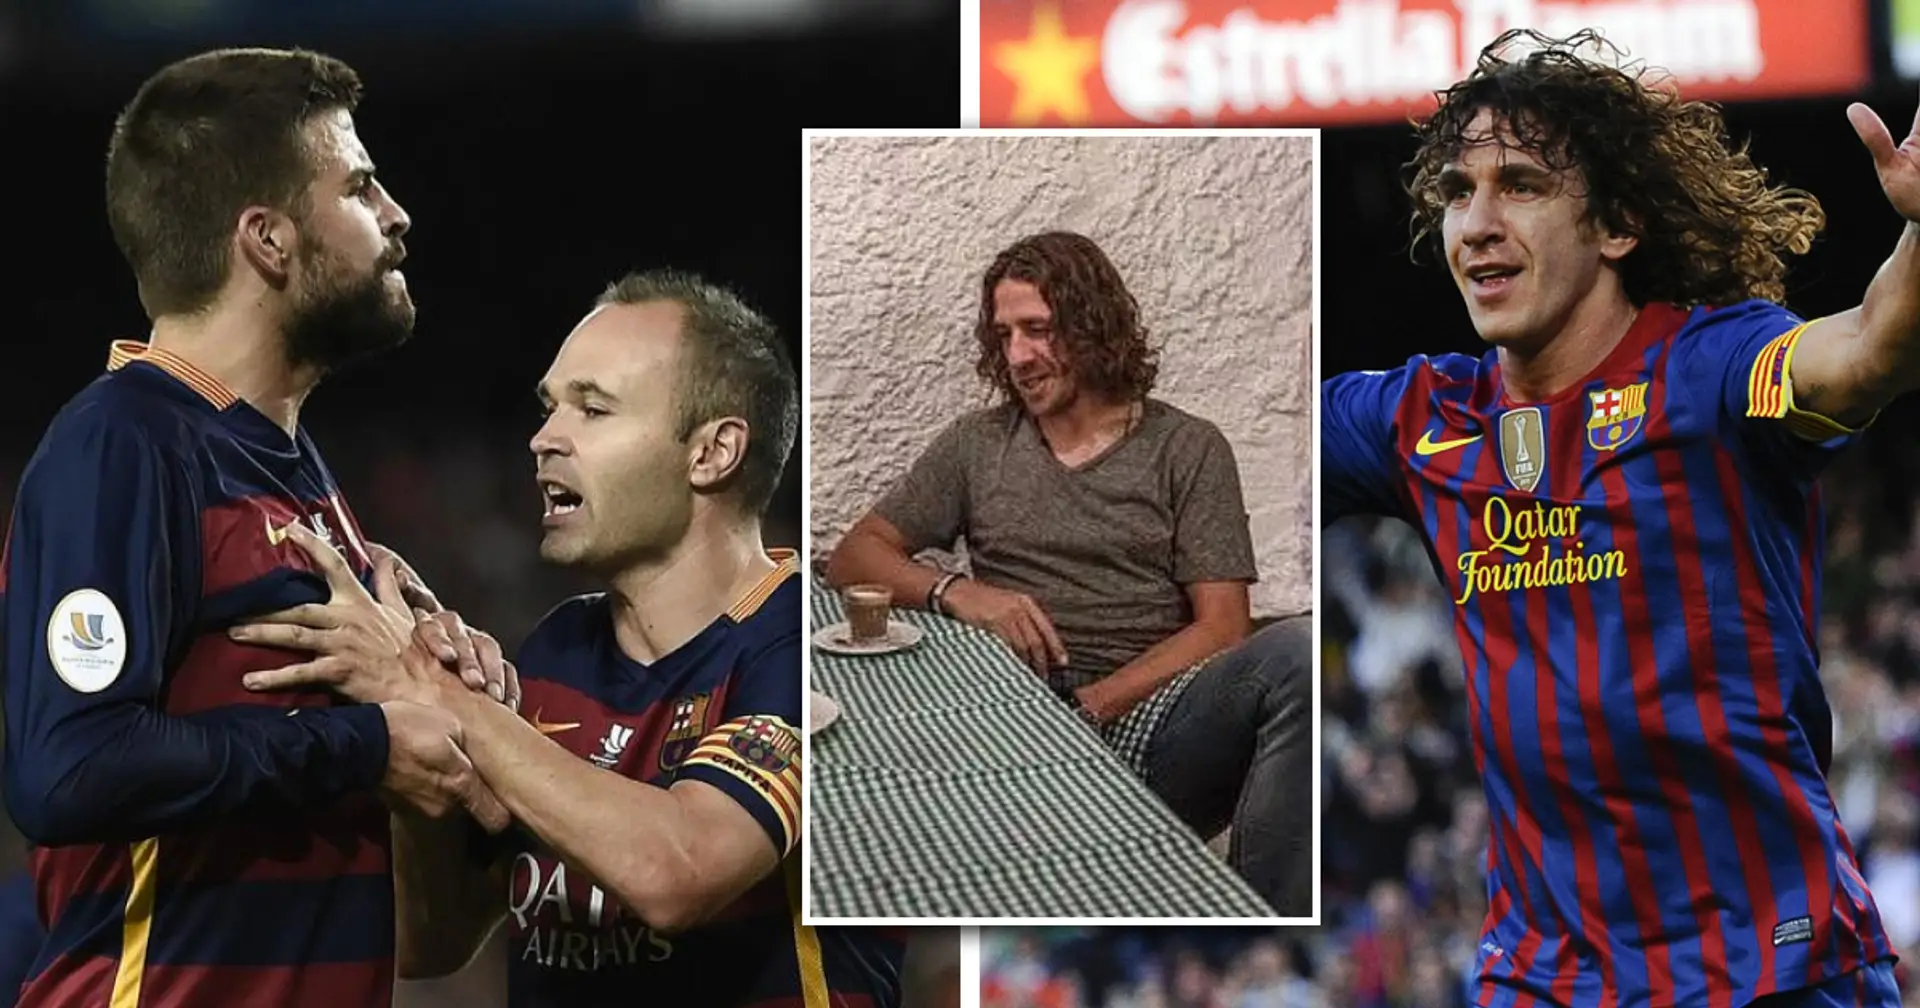 "Peu de gens ont défendu le maillot du Barca comme toi": Carles Puyol à propos de son ancien coéquipier